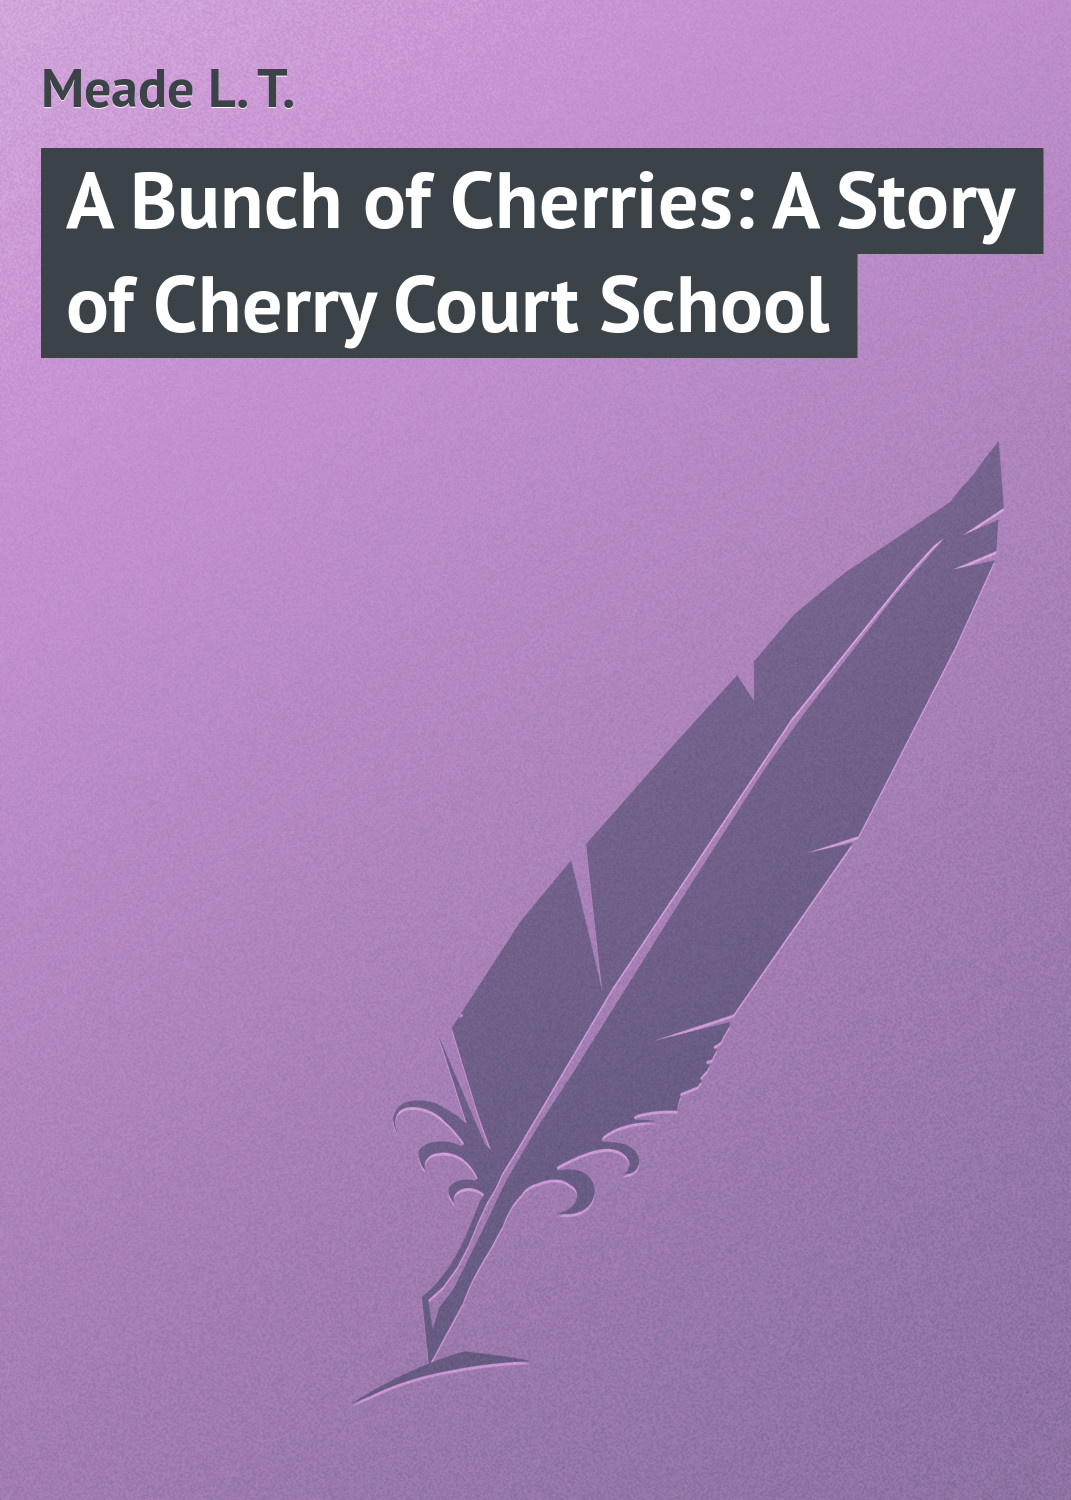 Книга A Bunch of Cherries: A Story of Cherry Court School из серии , созданная L. Meade, может относится к жанру Зарубежная классика, Зарубежные детские книги. Стоимость электронной книги A Bunch of Cherries: A Story of Cherry Court School с идентификатором 23147163 составляет 5.99 руб.